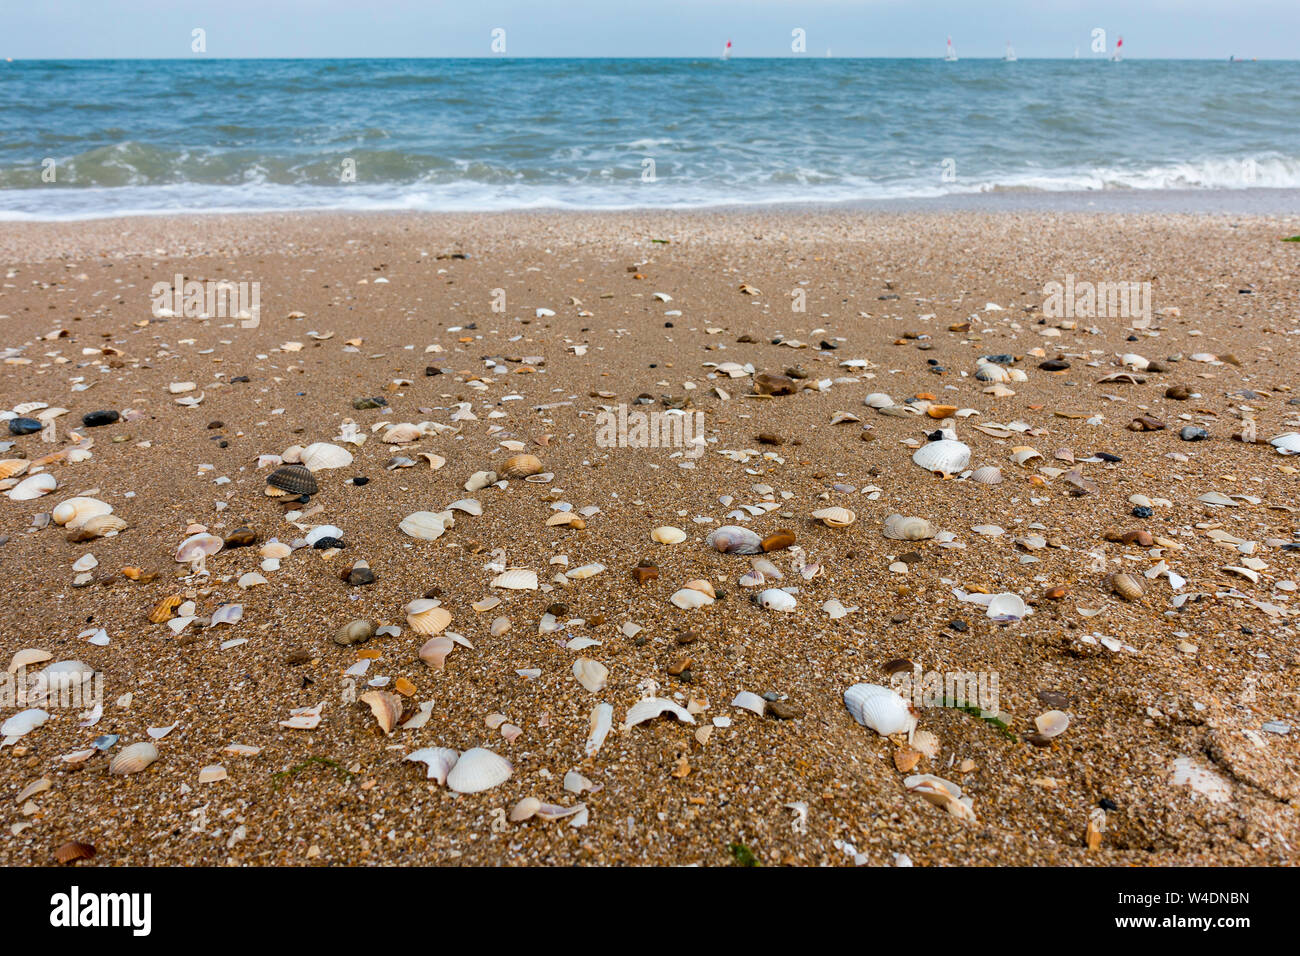 Shells completos o fragmentados arrastrado sobre forewash inclinable/zona de playa en la costa del Mar del Norte con marea baja. Foto de stock